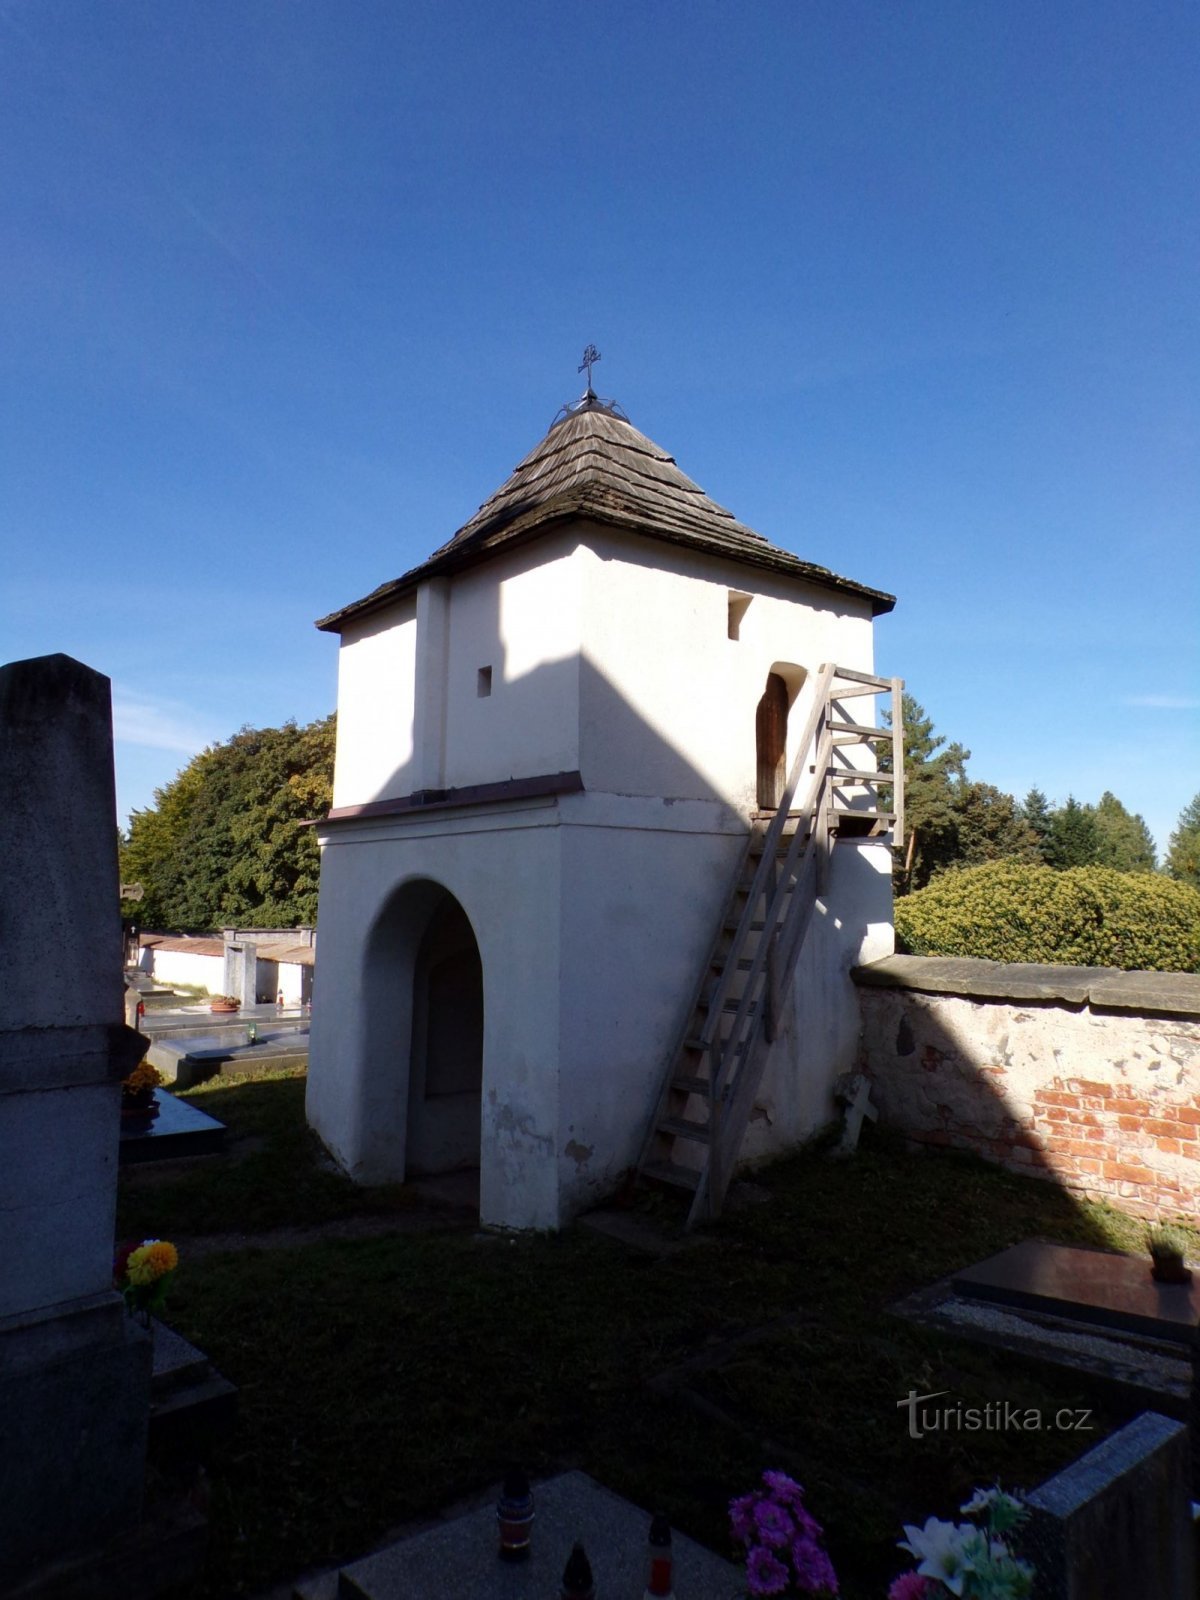 Entrada al cementerio en la capilla del cementerio de St. Jiří (Lázně Bohdaneč, 2.10.2021 de octubre de XNUMX)